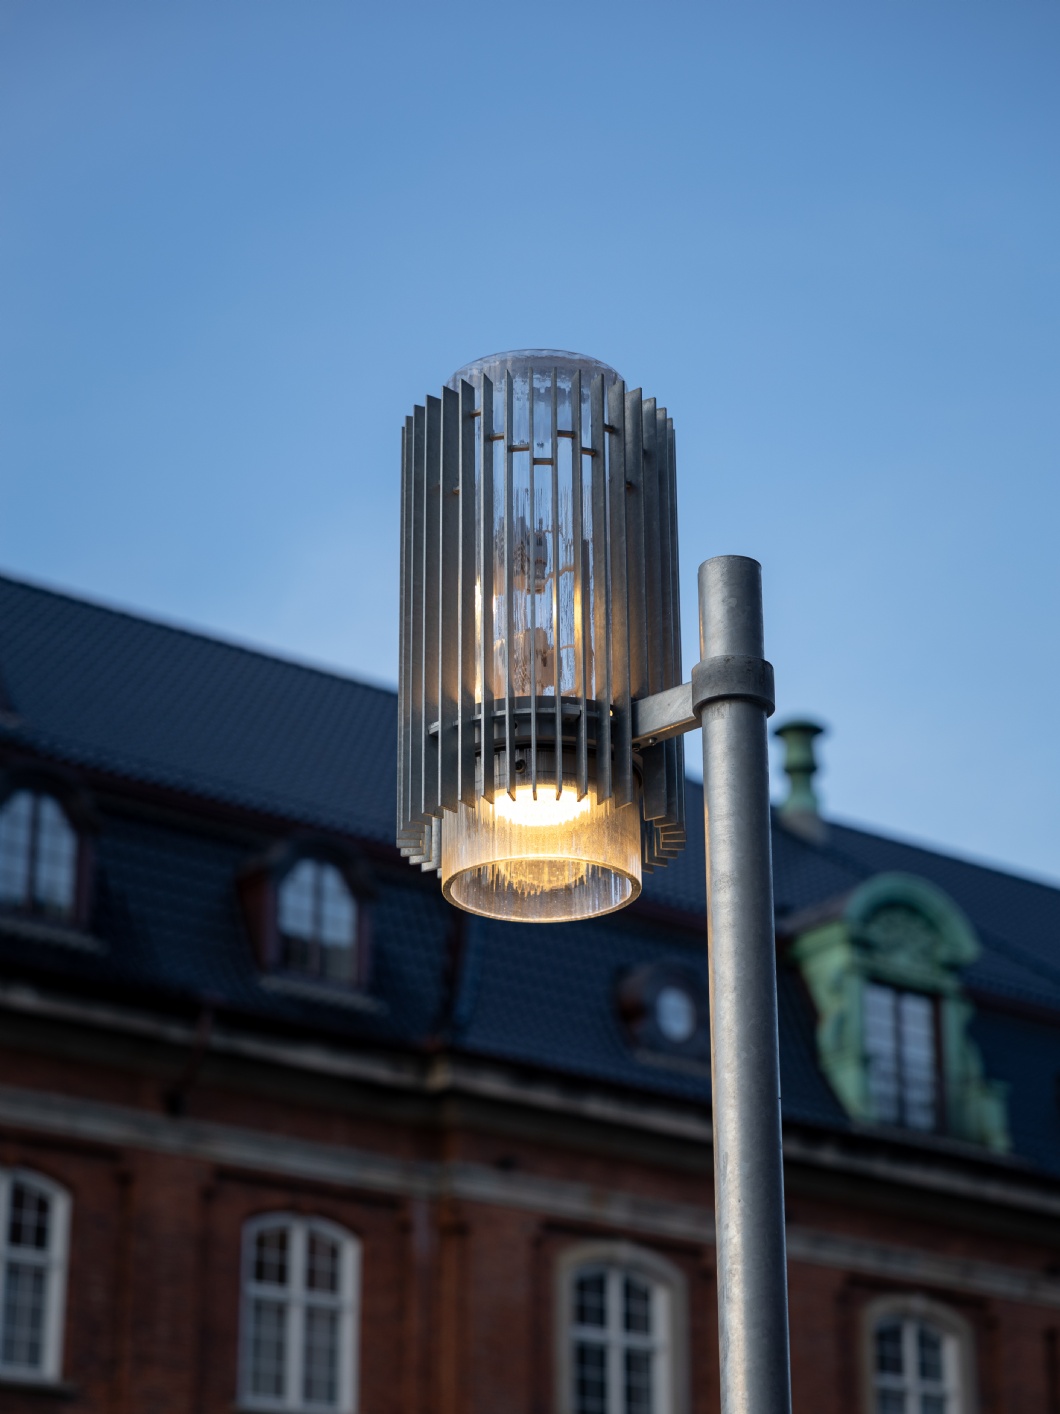 Individuelle Beleuchtung für das lebendige Stadtviertel – Postbyen in Kopenhagen 7